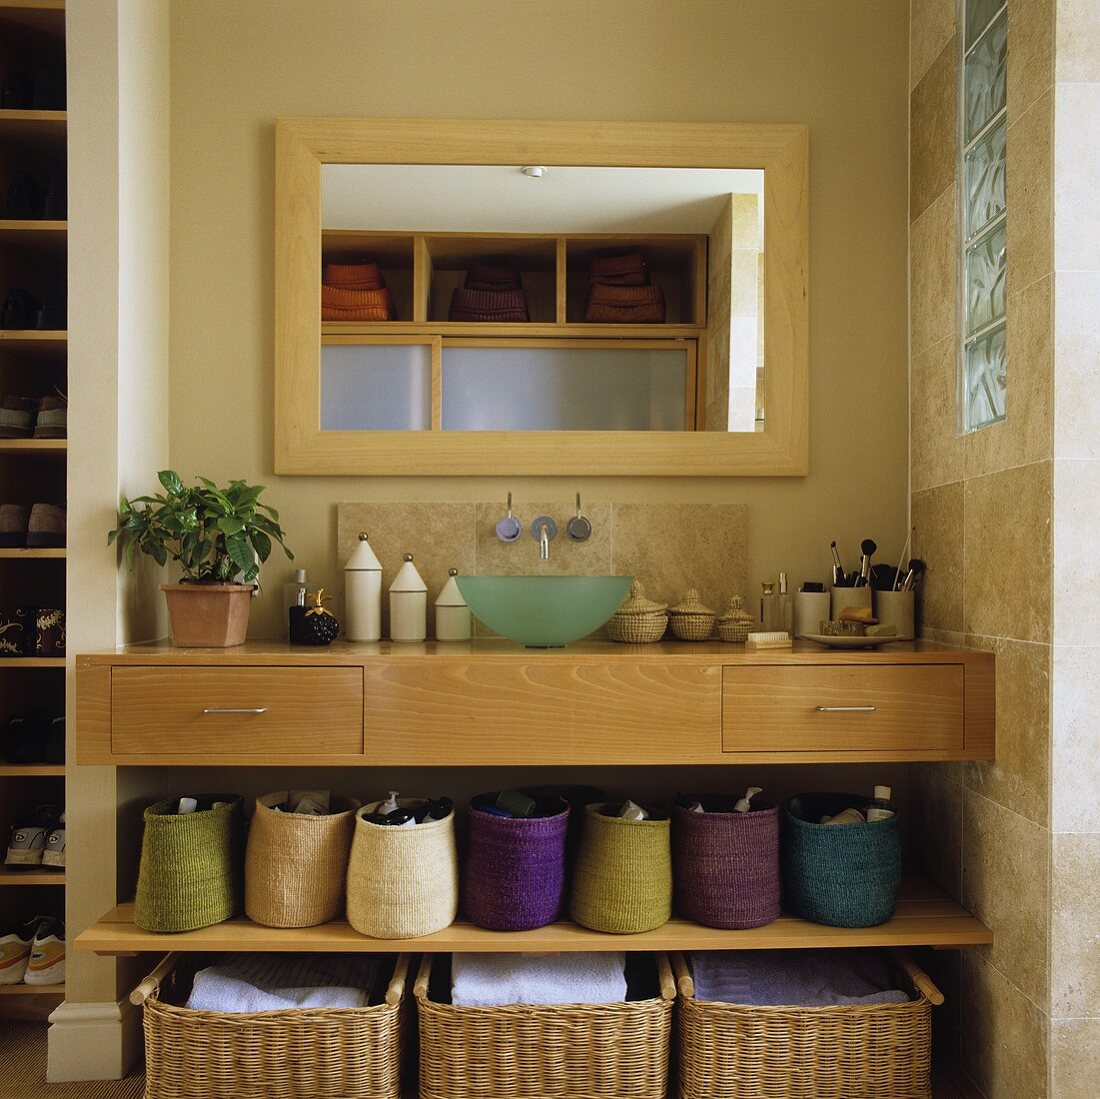 Wandnische mit eingebautem Waschtisch in hellem Holz mit Körben auf Ablage und Spiegel